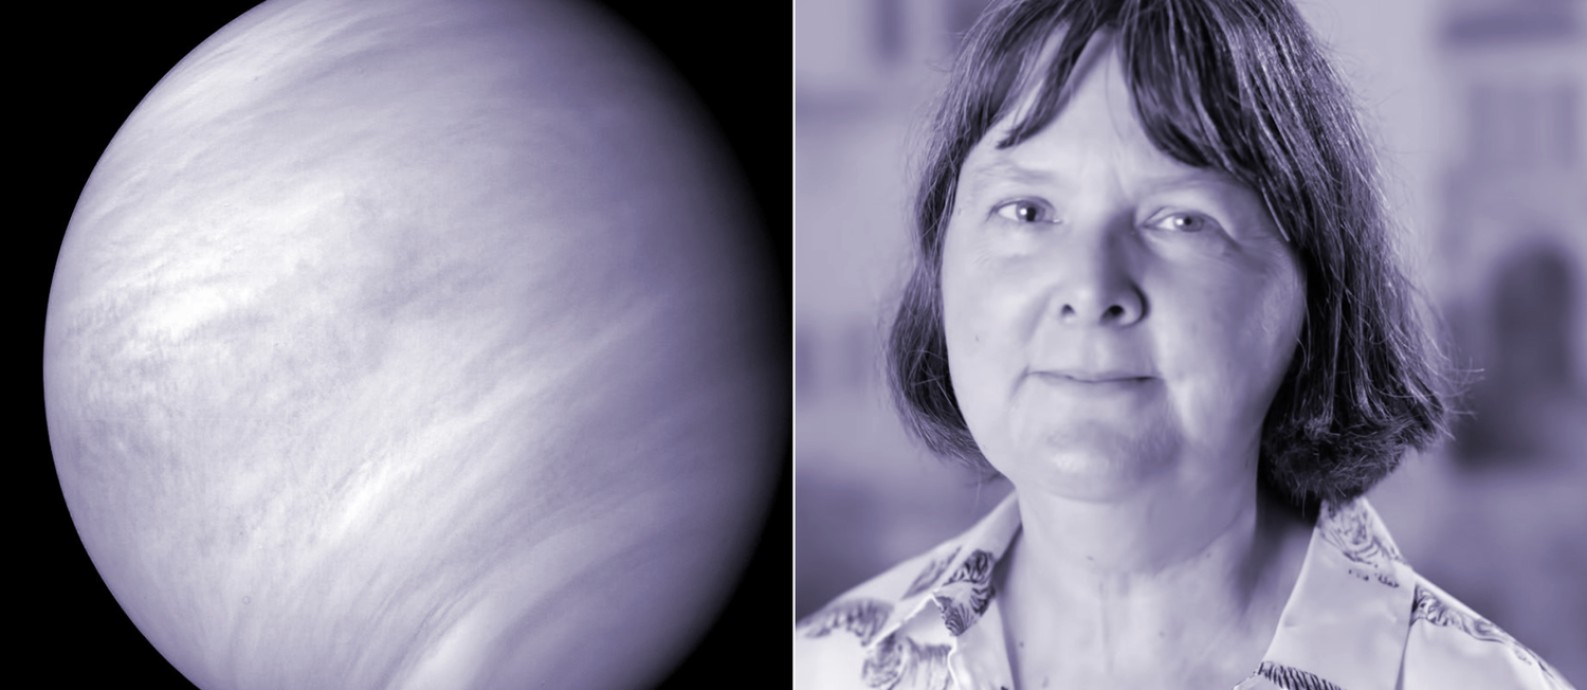 A astrônoma Jane Greaves, que liderou pesquisa que detectou a presença de fosfina na atmosfera de Vênus, também luta para que a ciência seja um lugar mais justo para as mulheres Foto: Reprodução 